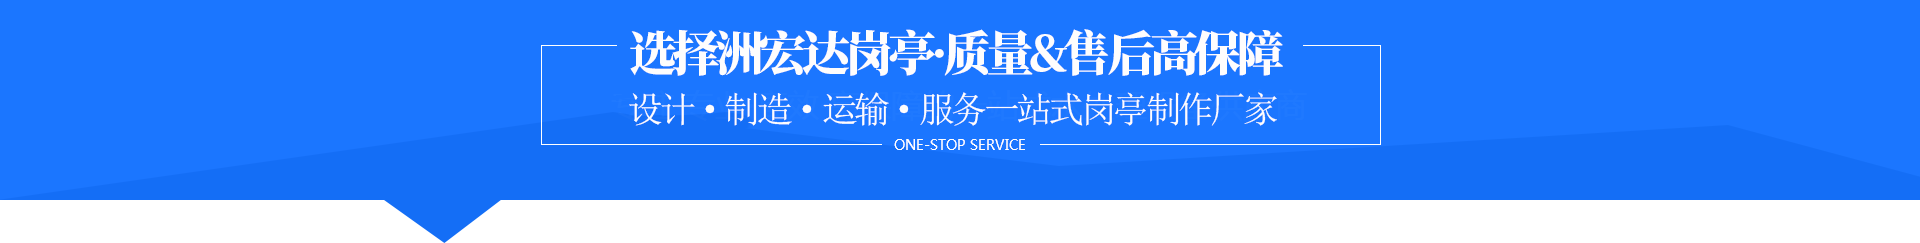 贵州888绿色集团登录网址